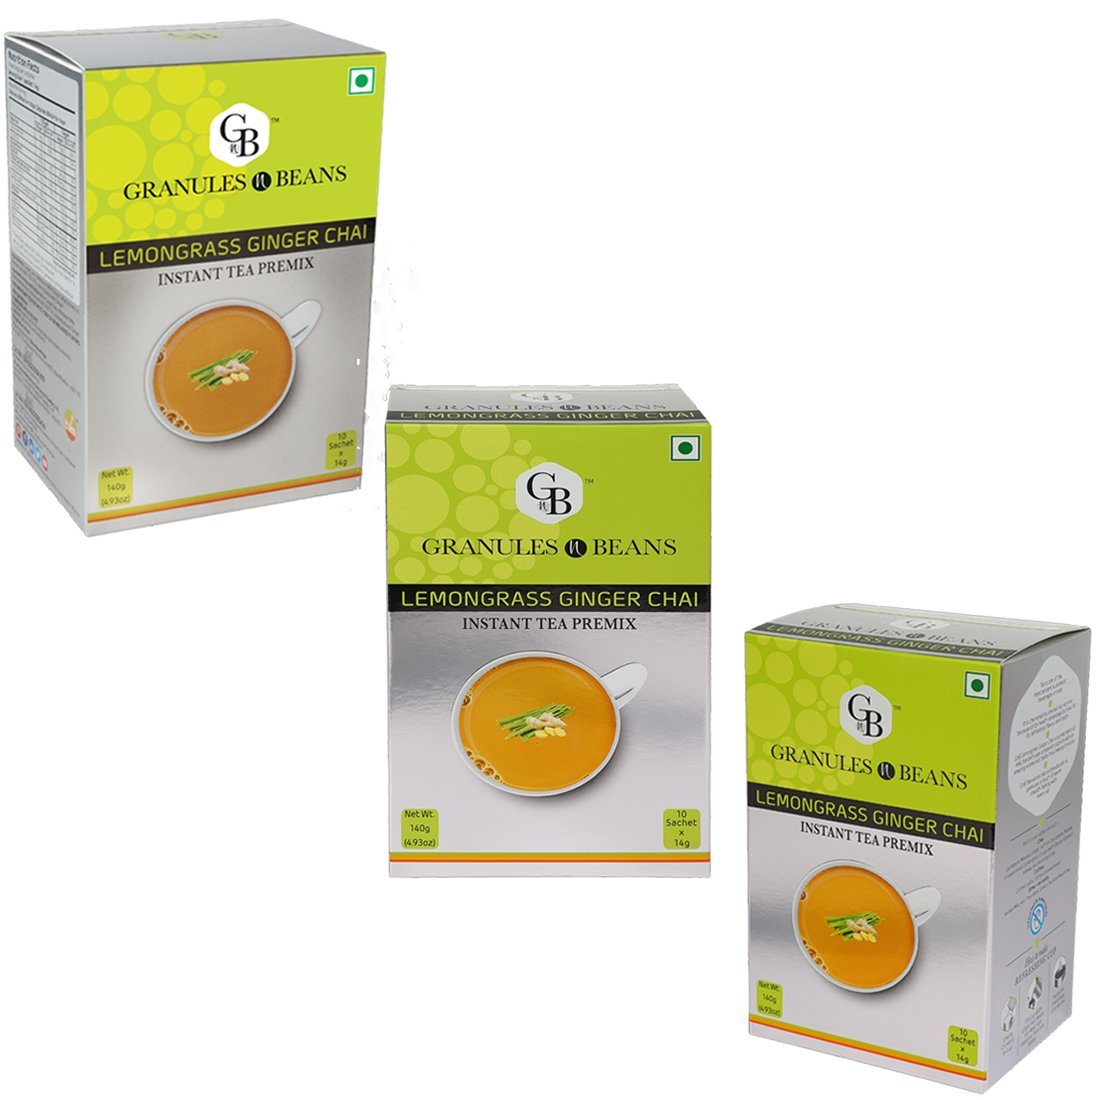 Granules n Beans Lemongrass Ginger Chai Instant Tea Premix - (10 Sachet x 14g = 140g) (Pack of 3)